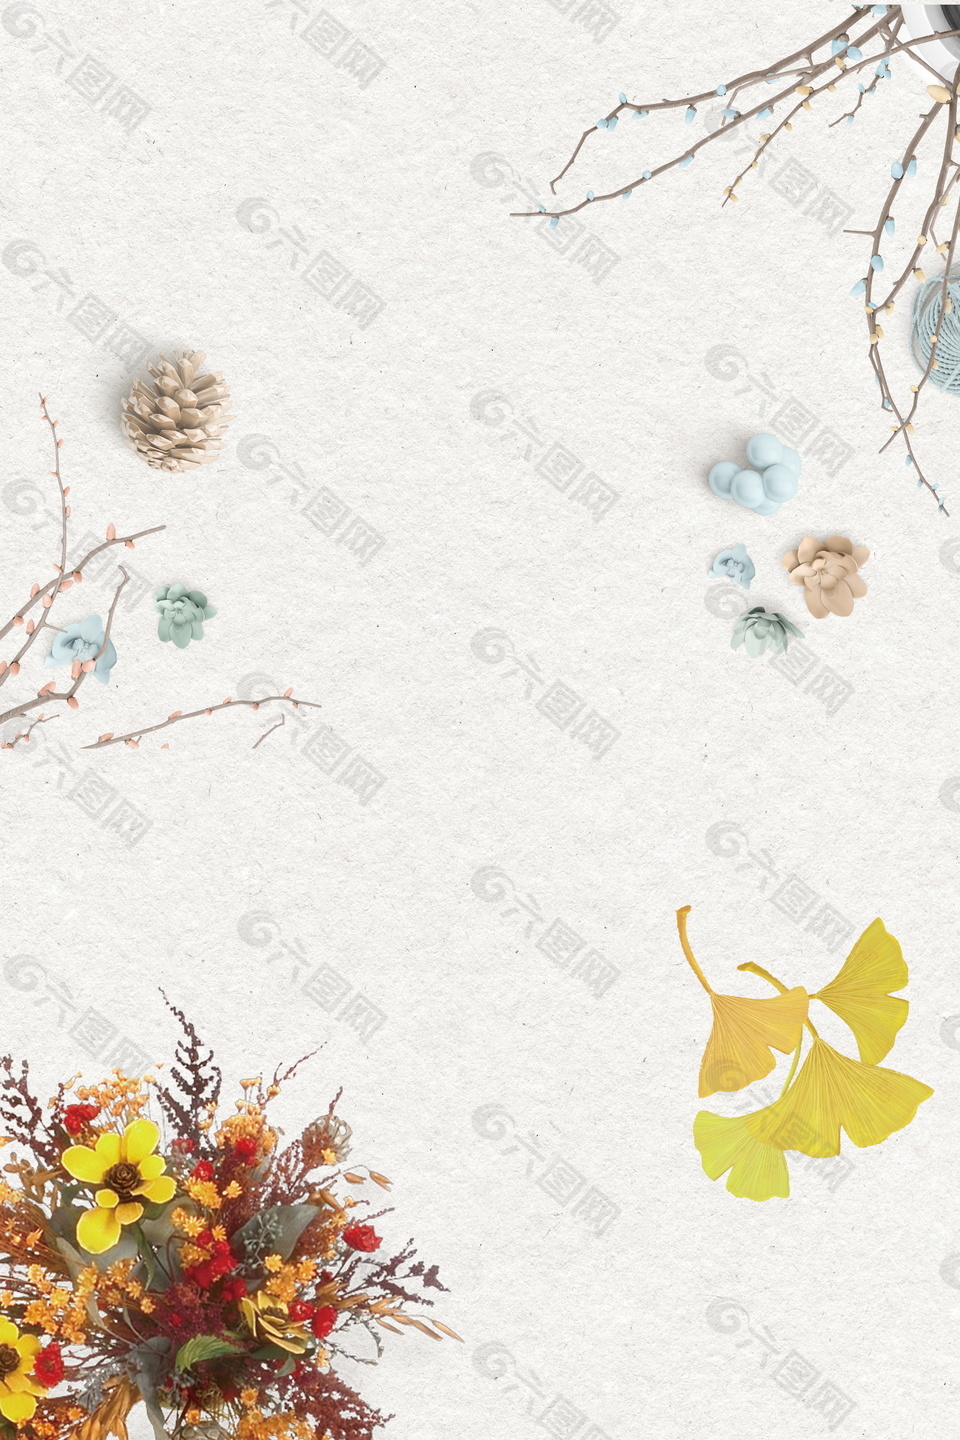 彩绘秋季落叶松果海报背景素材